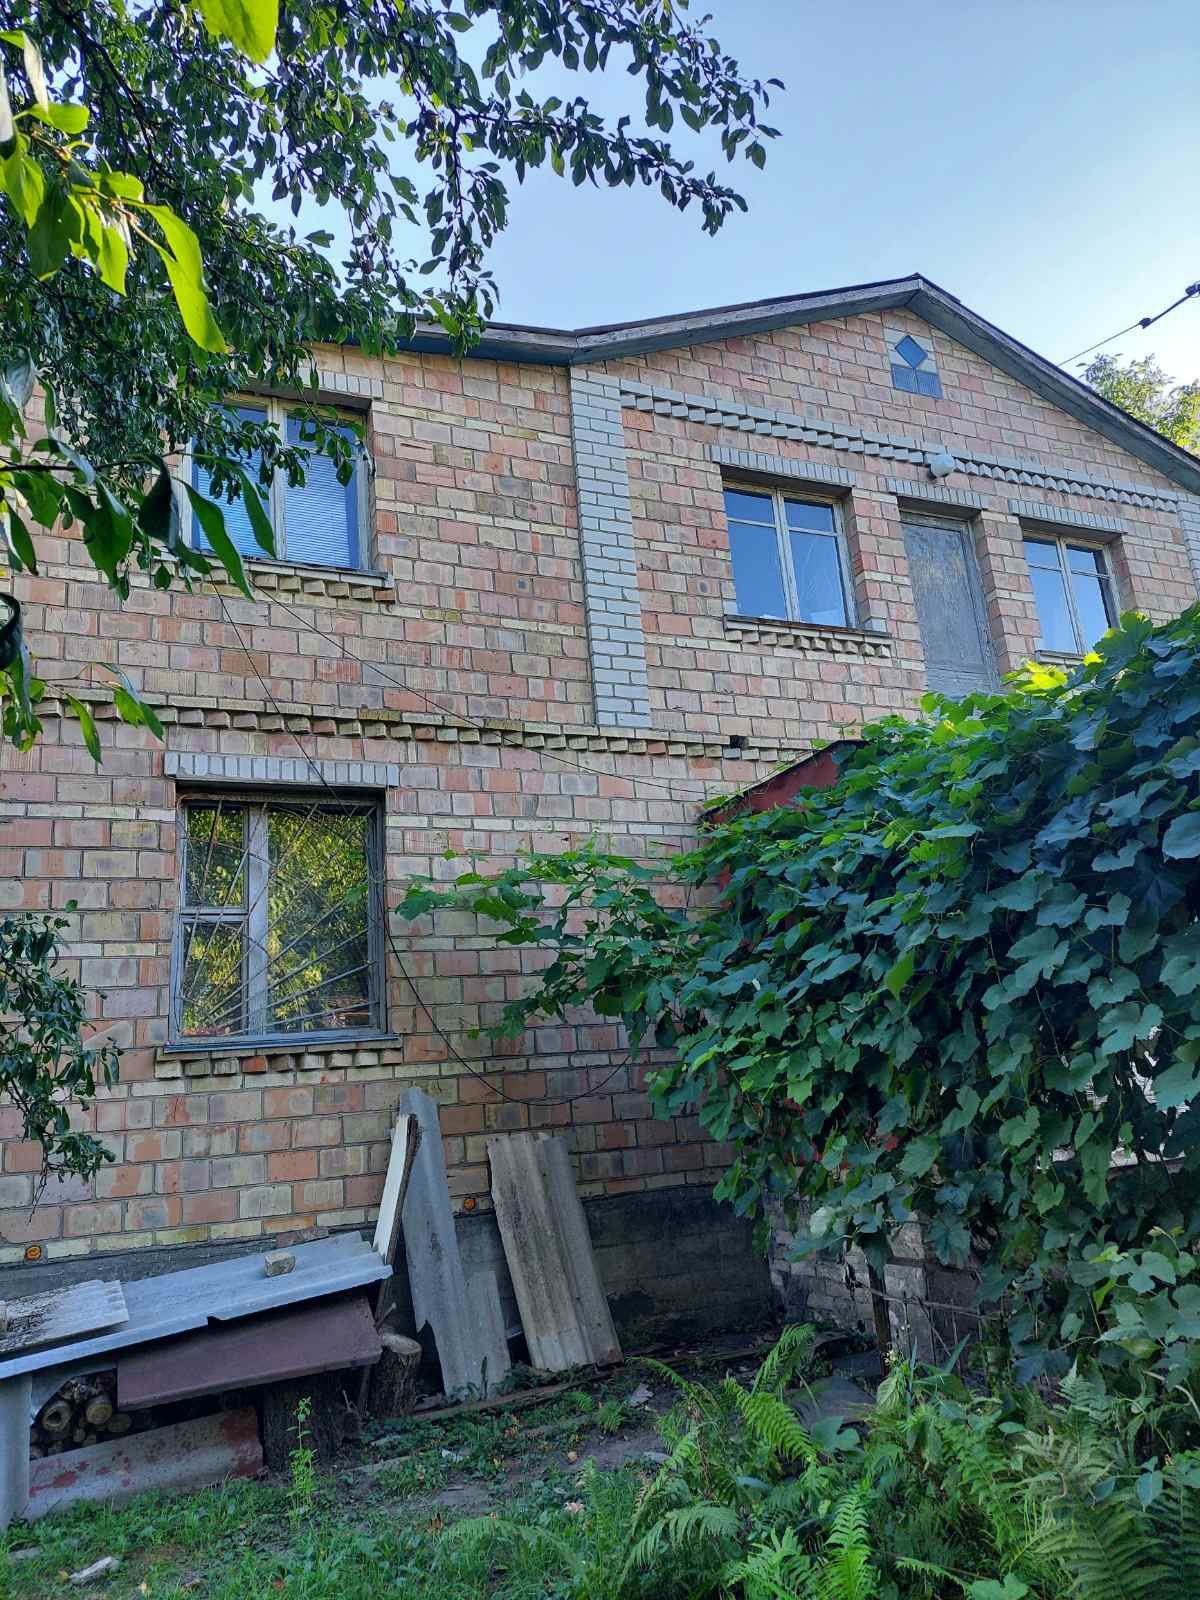 Продам будинок 35км від Києва, Броварський район.